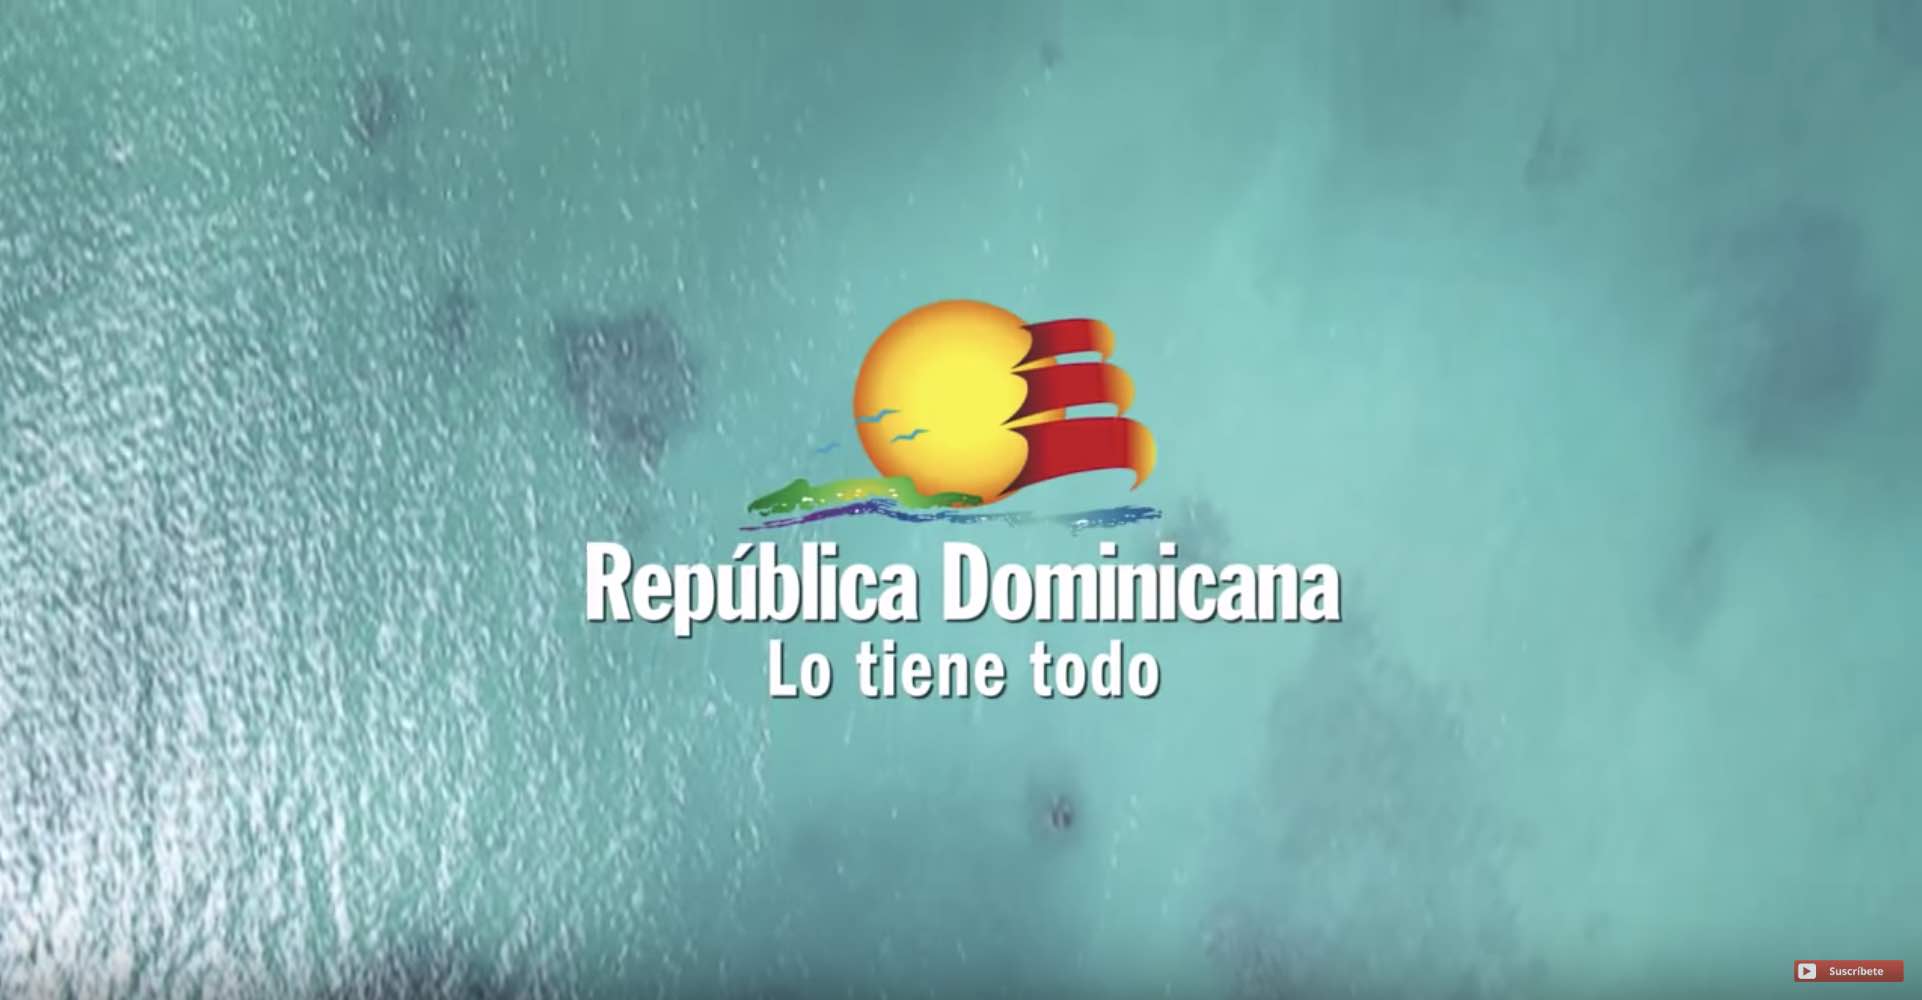 Me Gusta República Dominicana Ministerio De Turismo Color Visión